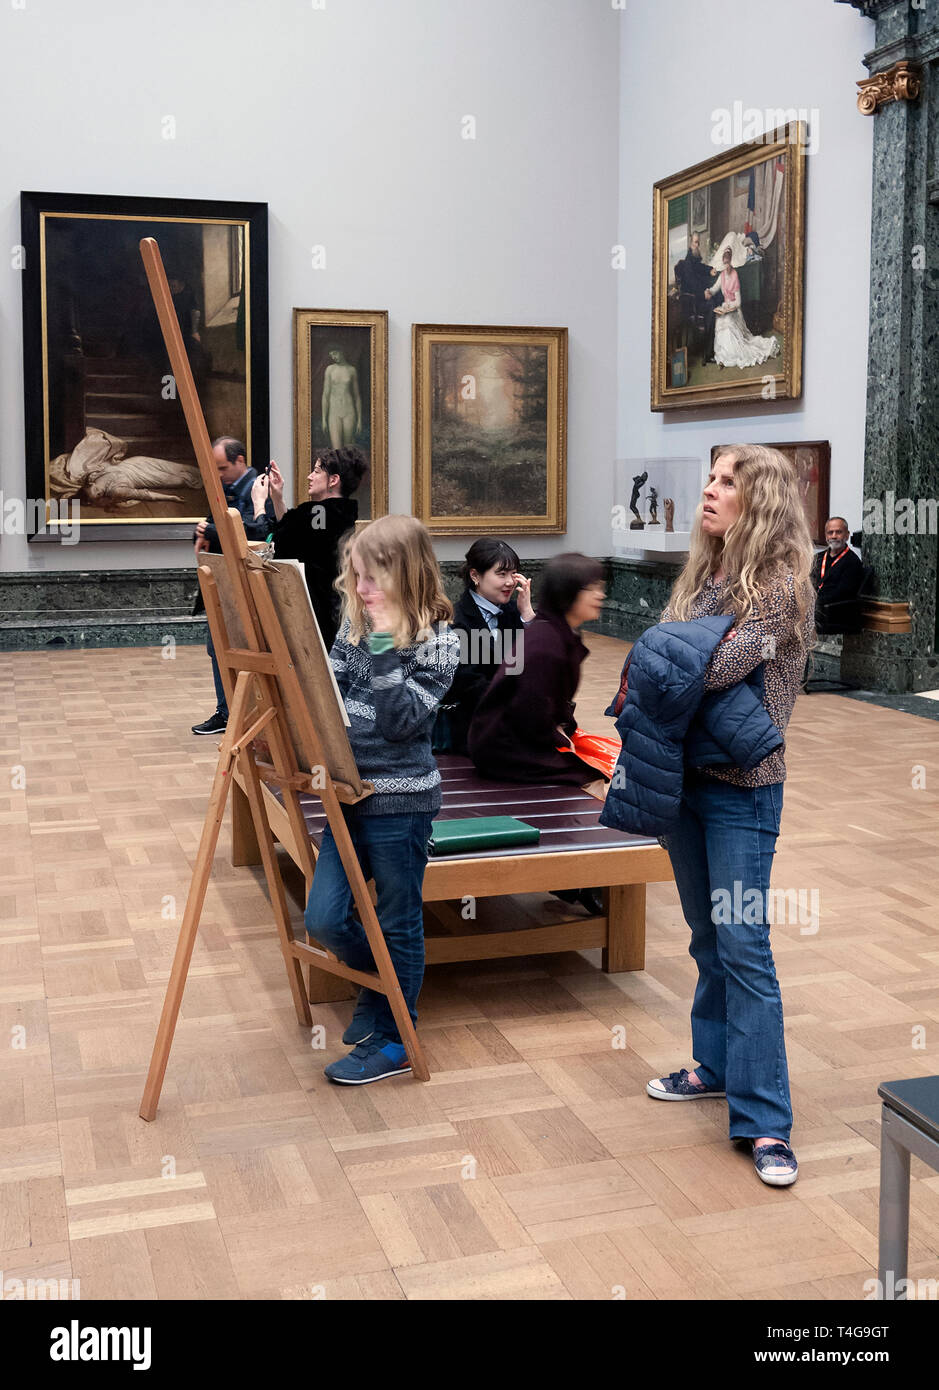 Les jeunes visiteurs à une galerie d'art à Londres UK Banque D'Images